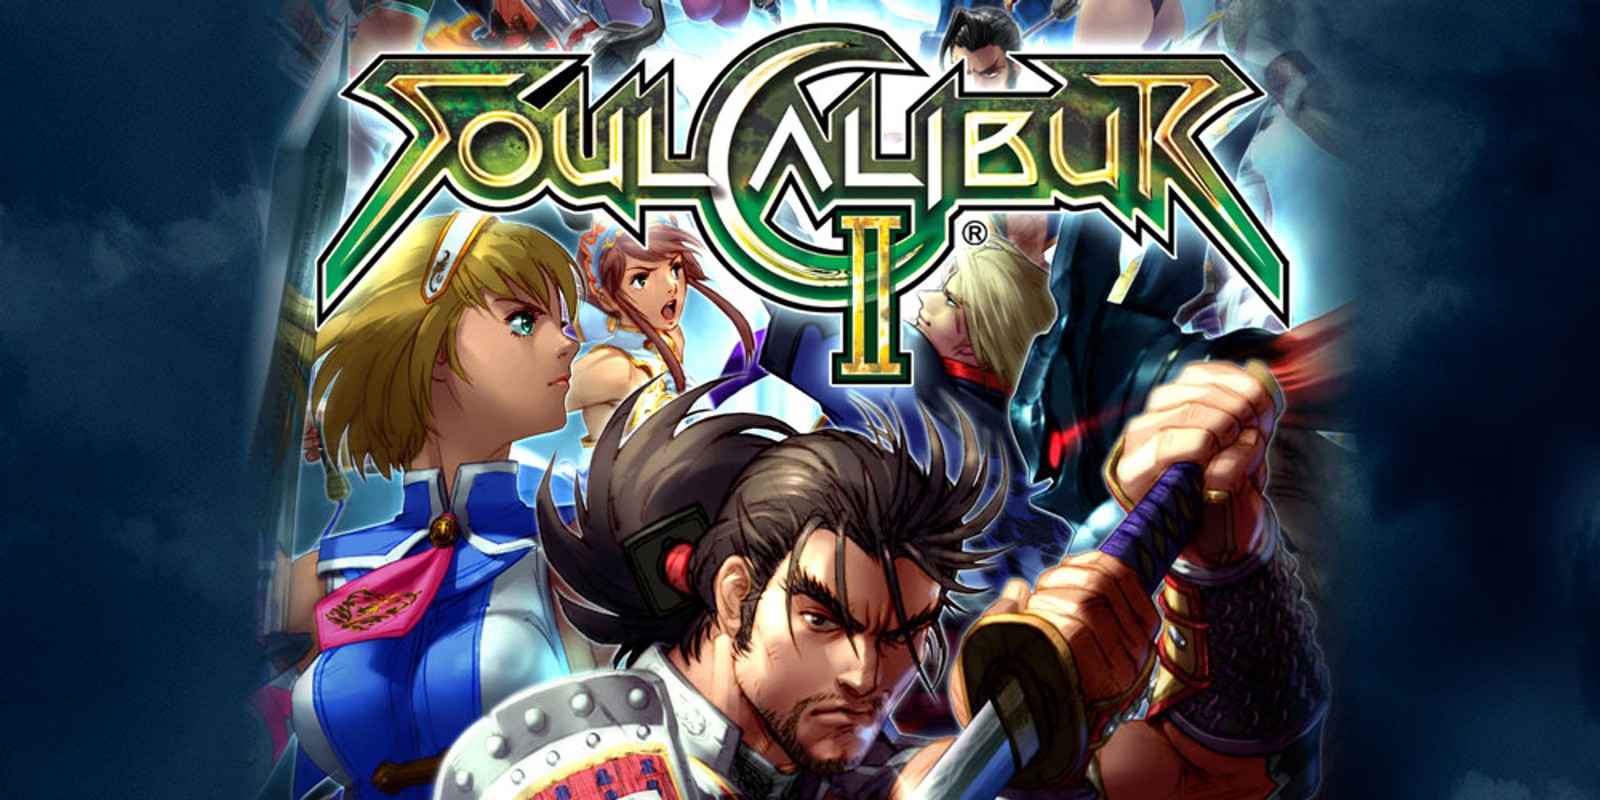 Sembra che un remaster di Soul Calibur sia in fase di sviluppo presso Bandai Namco • Nintendo Connect